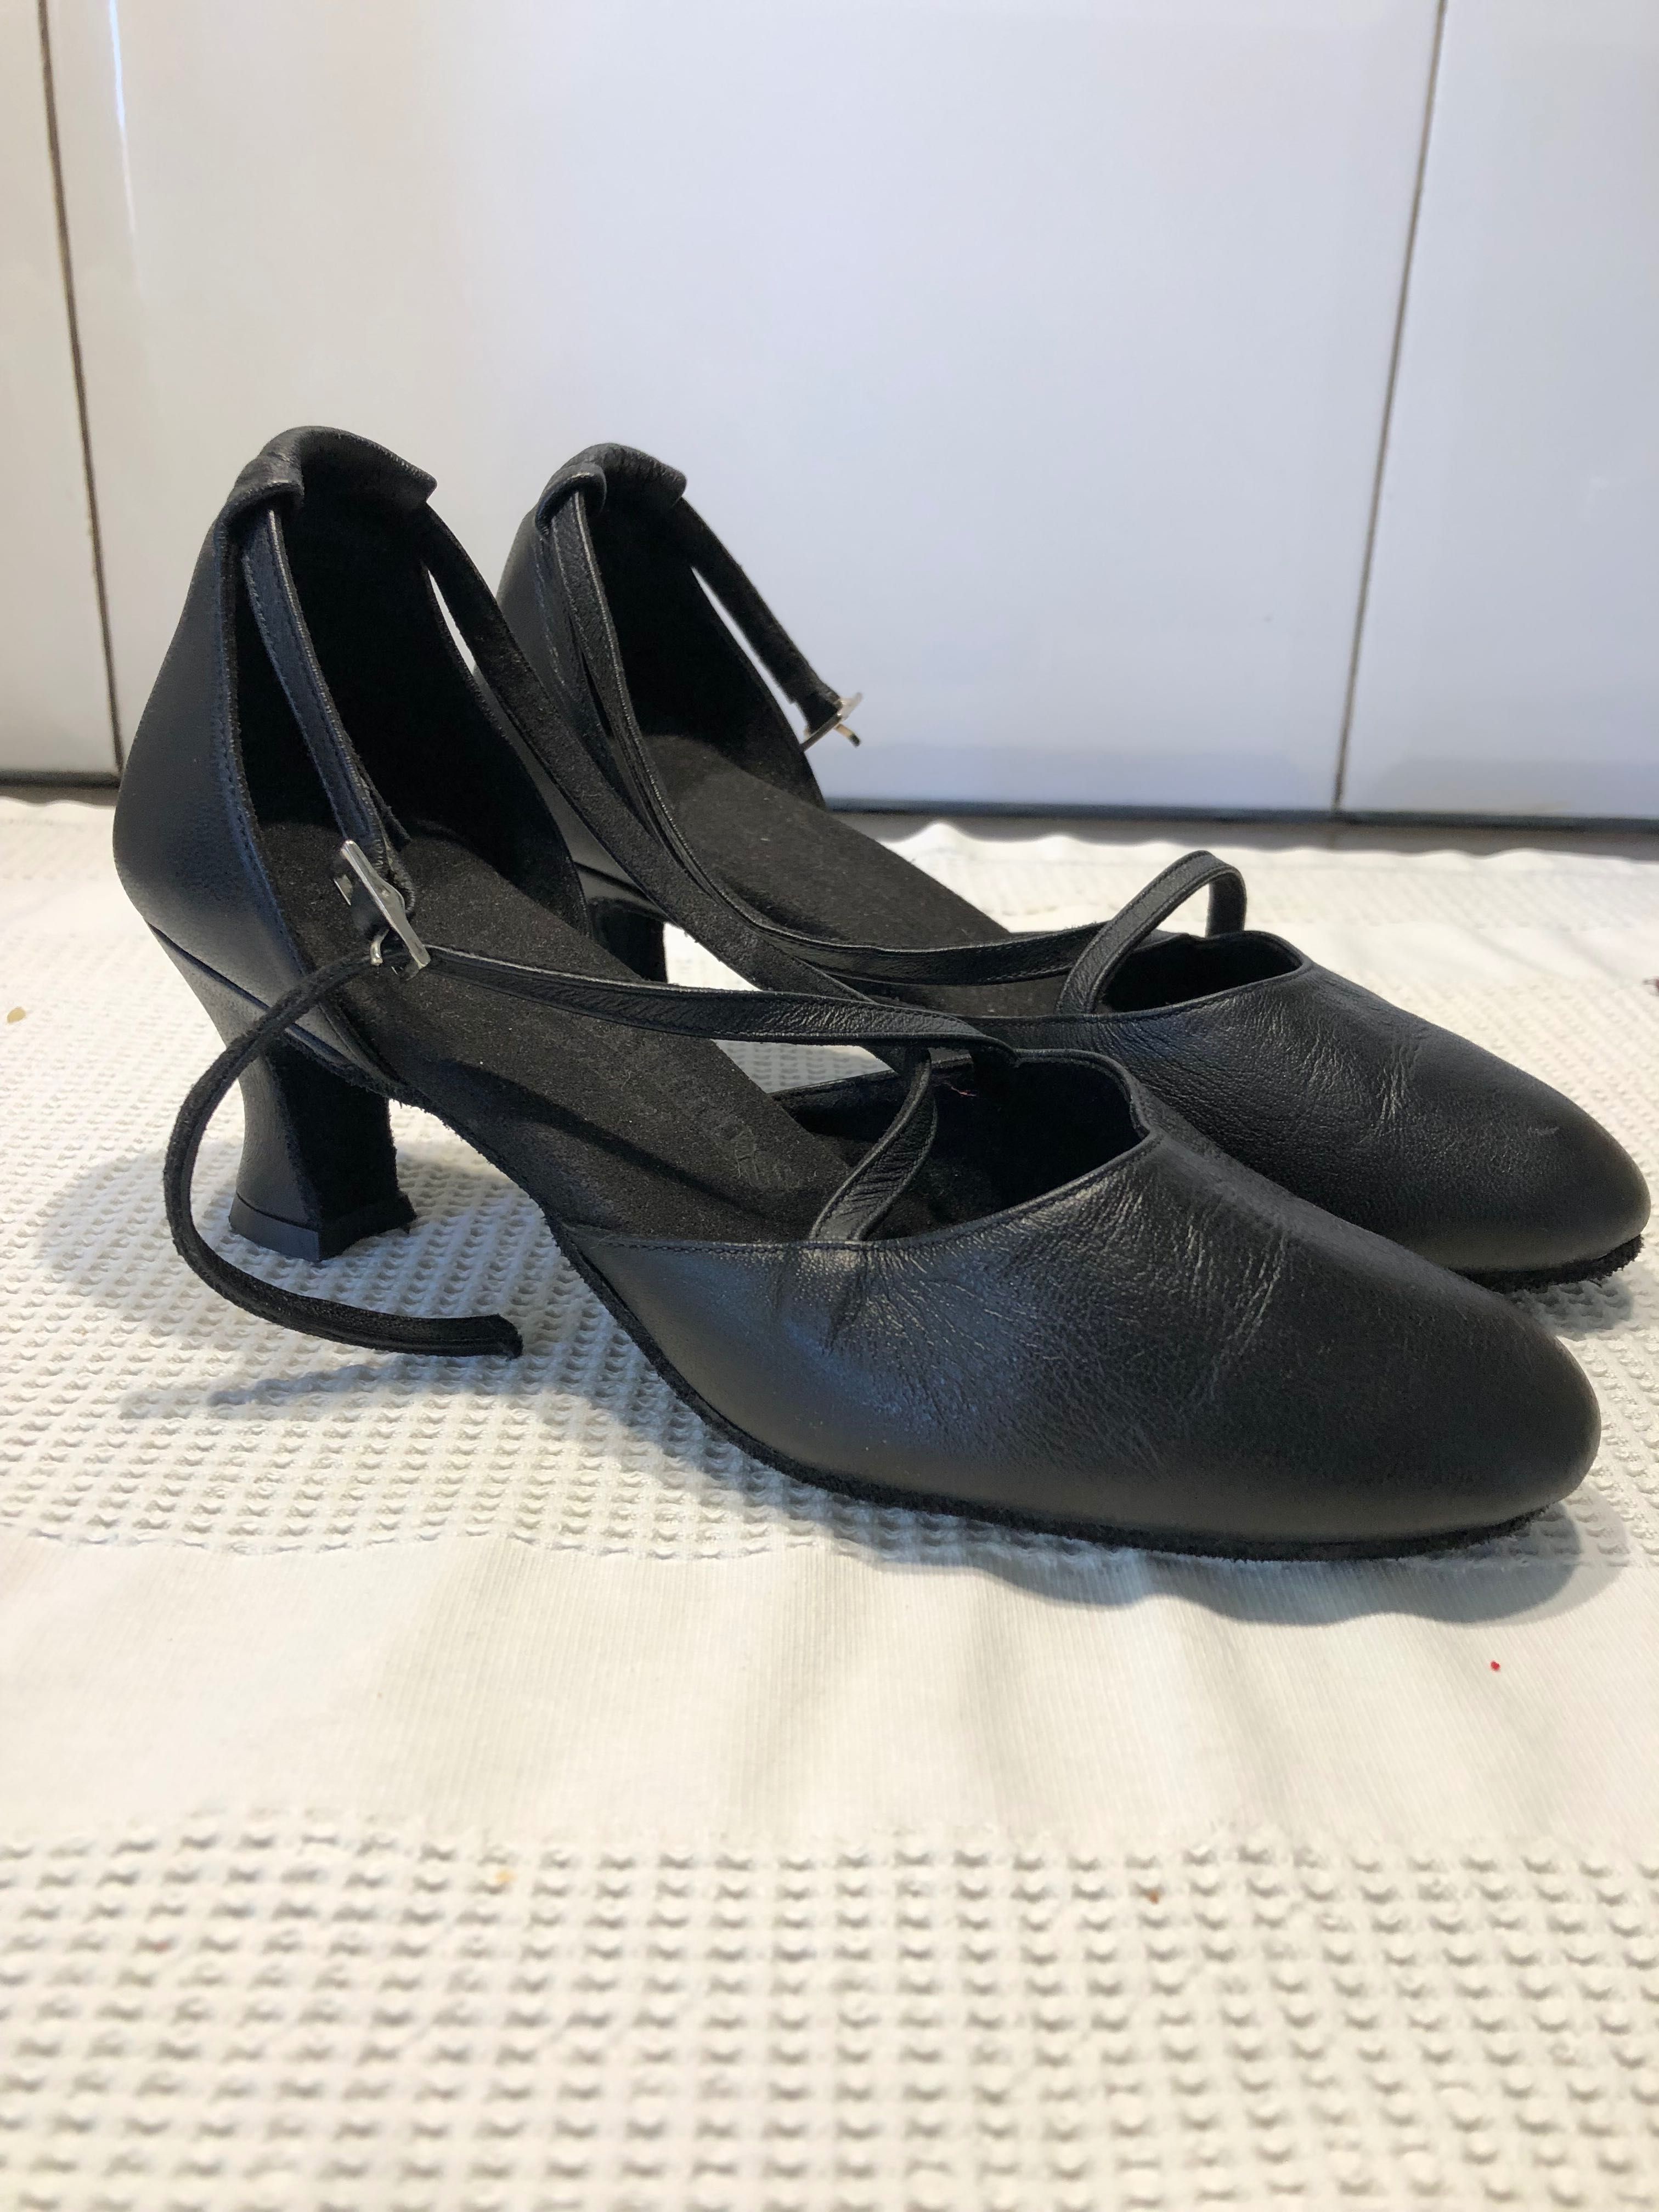 Sapatos tango/salsa/danças - Rummos - tamanho 34